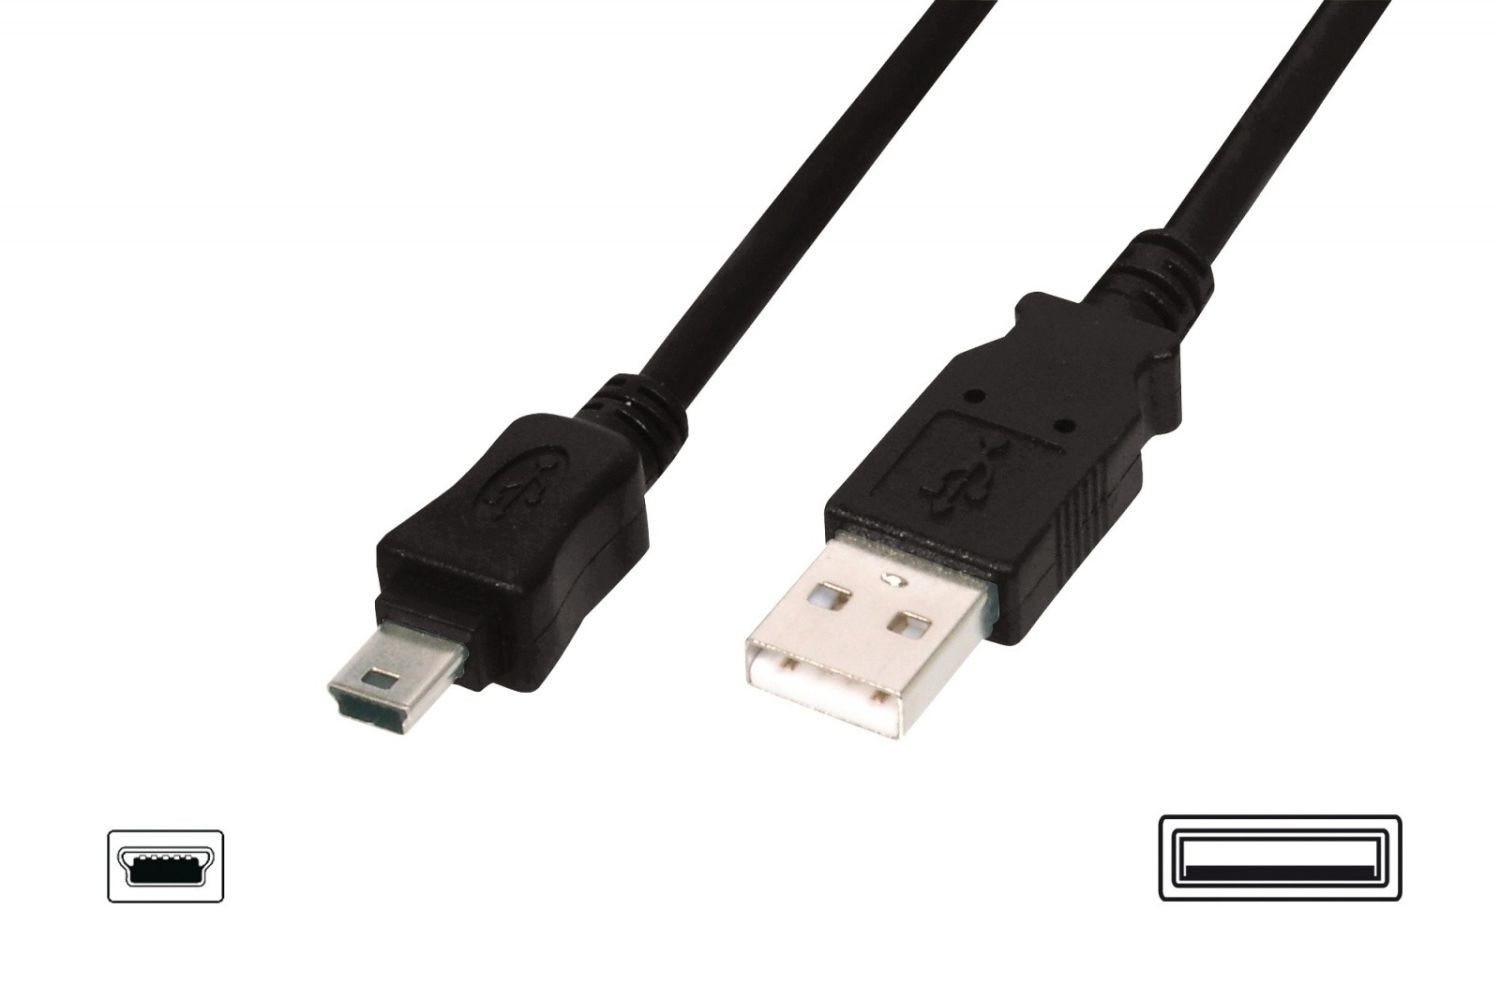 Assmann Kabel połączeniowy USB 2.0 HighSpeed 'Canon' Typ USB A/miniUSB B (5pin) M/M czarny 1,8m